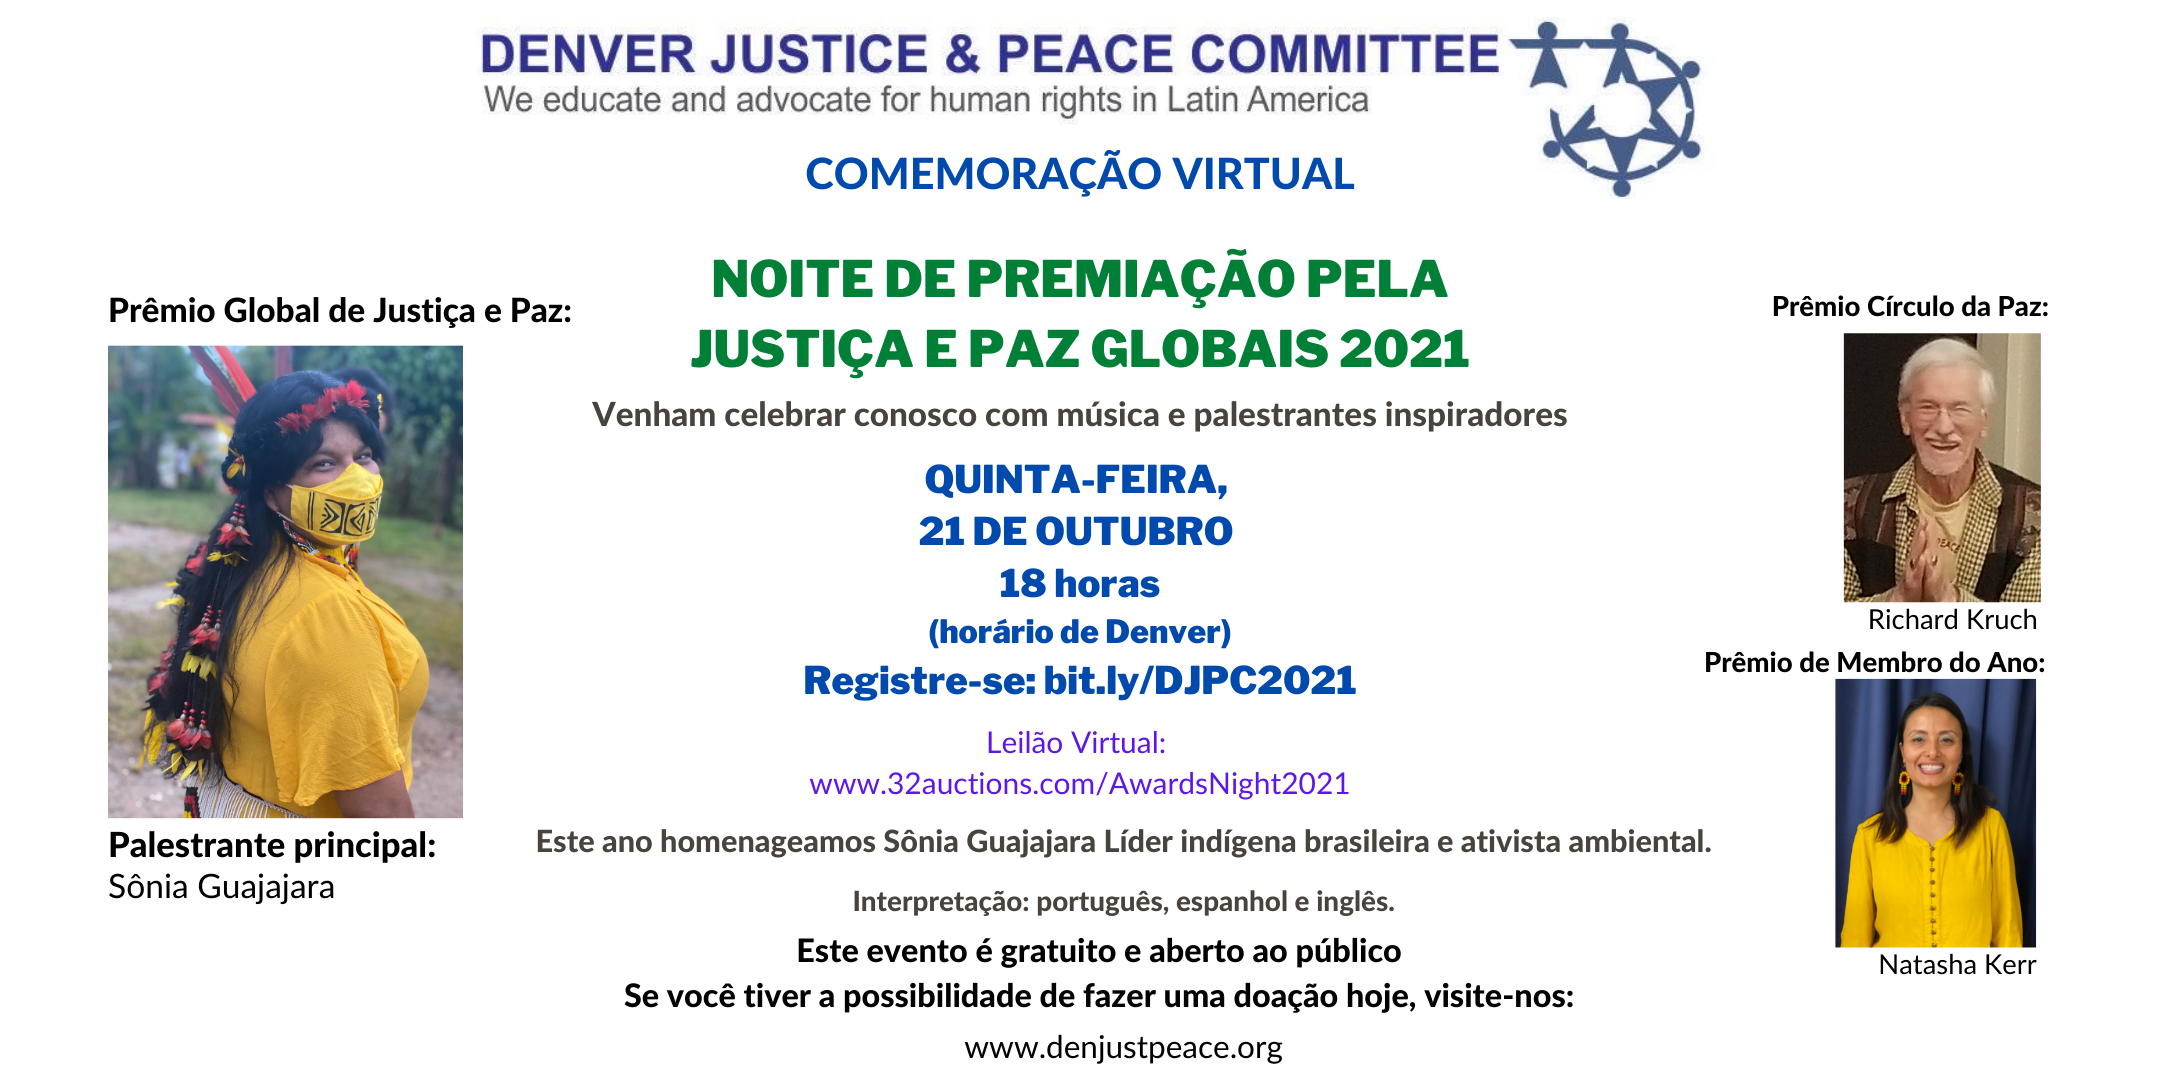 (English) Convite: Noite de Premiação pela Justiça e Paz Globais 2021. Quinta-feira, 21 de outubro, às 18:00.